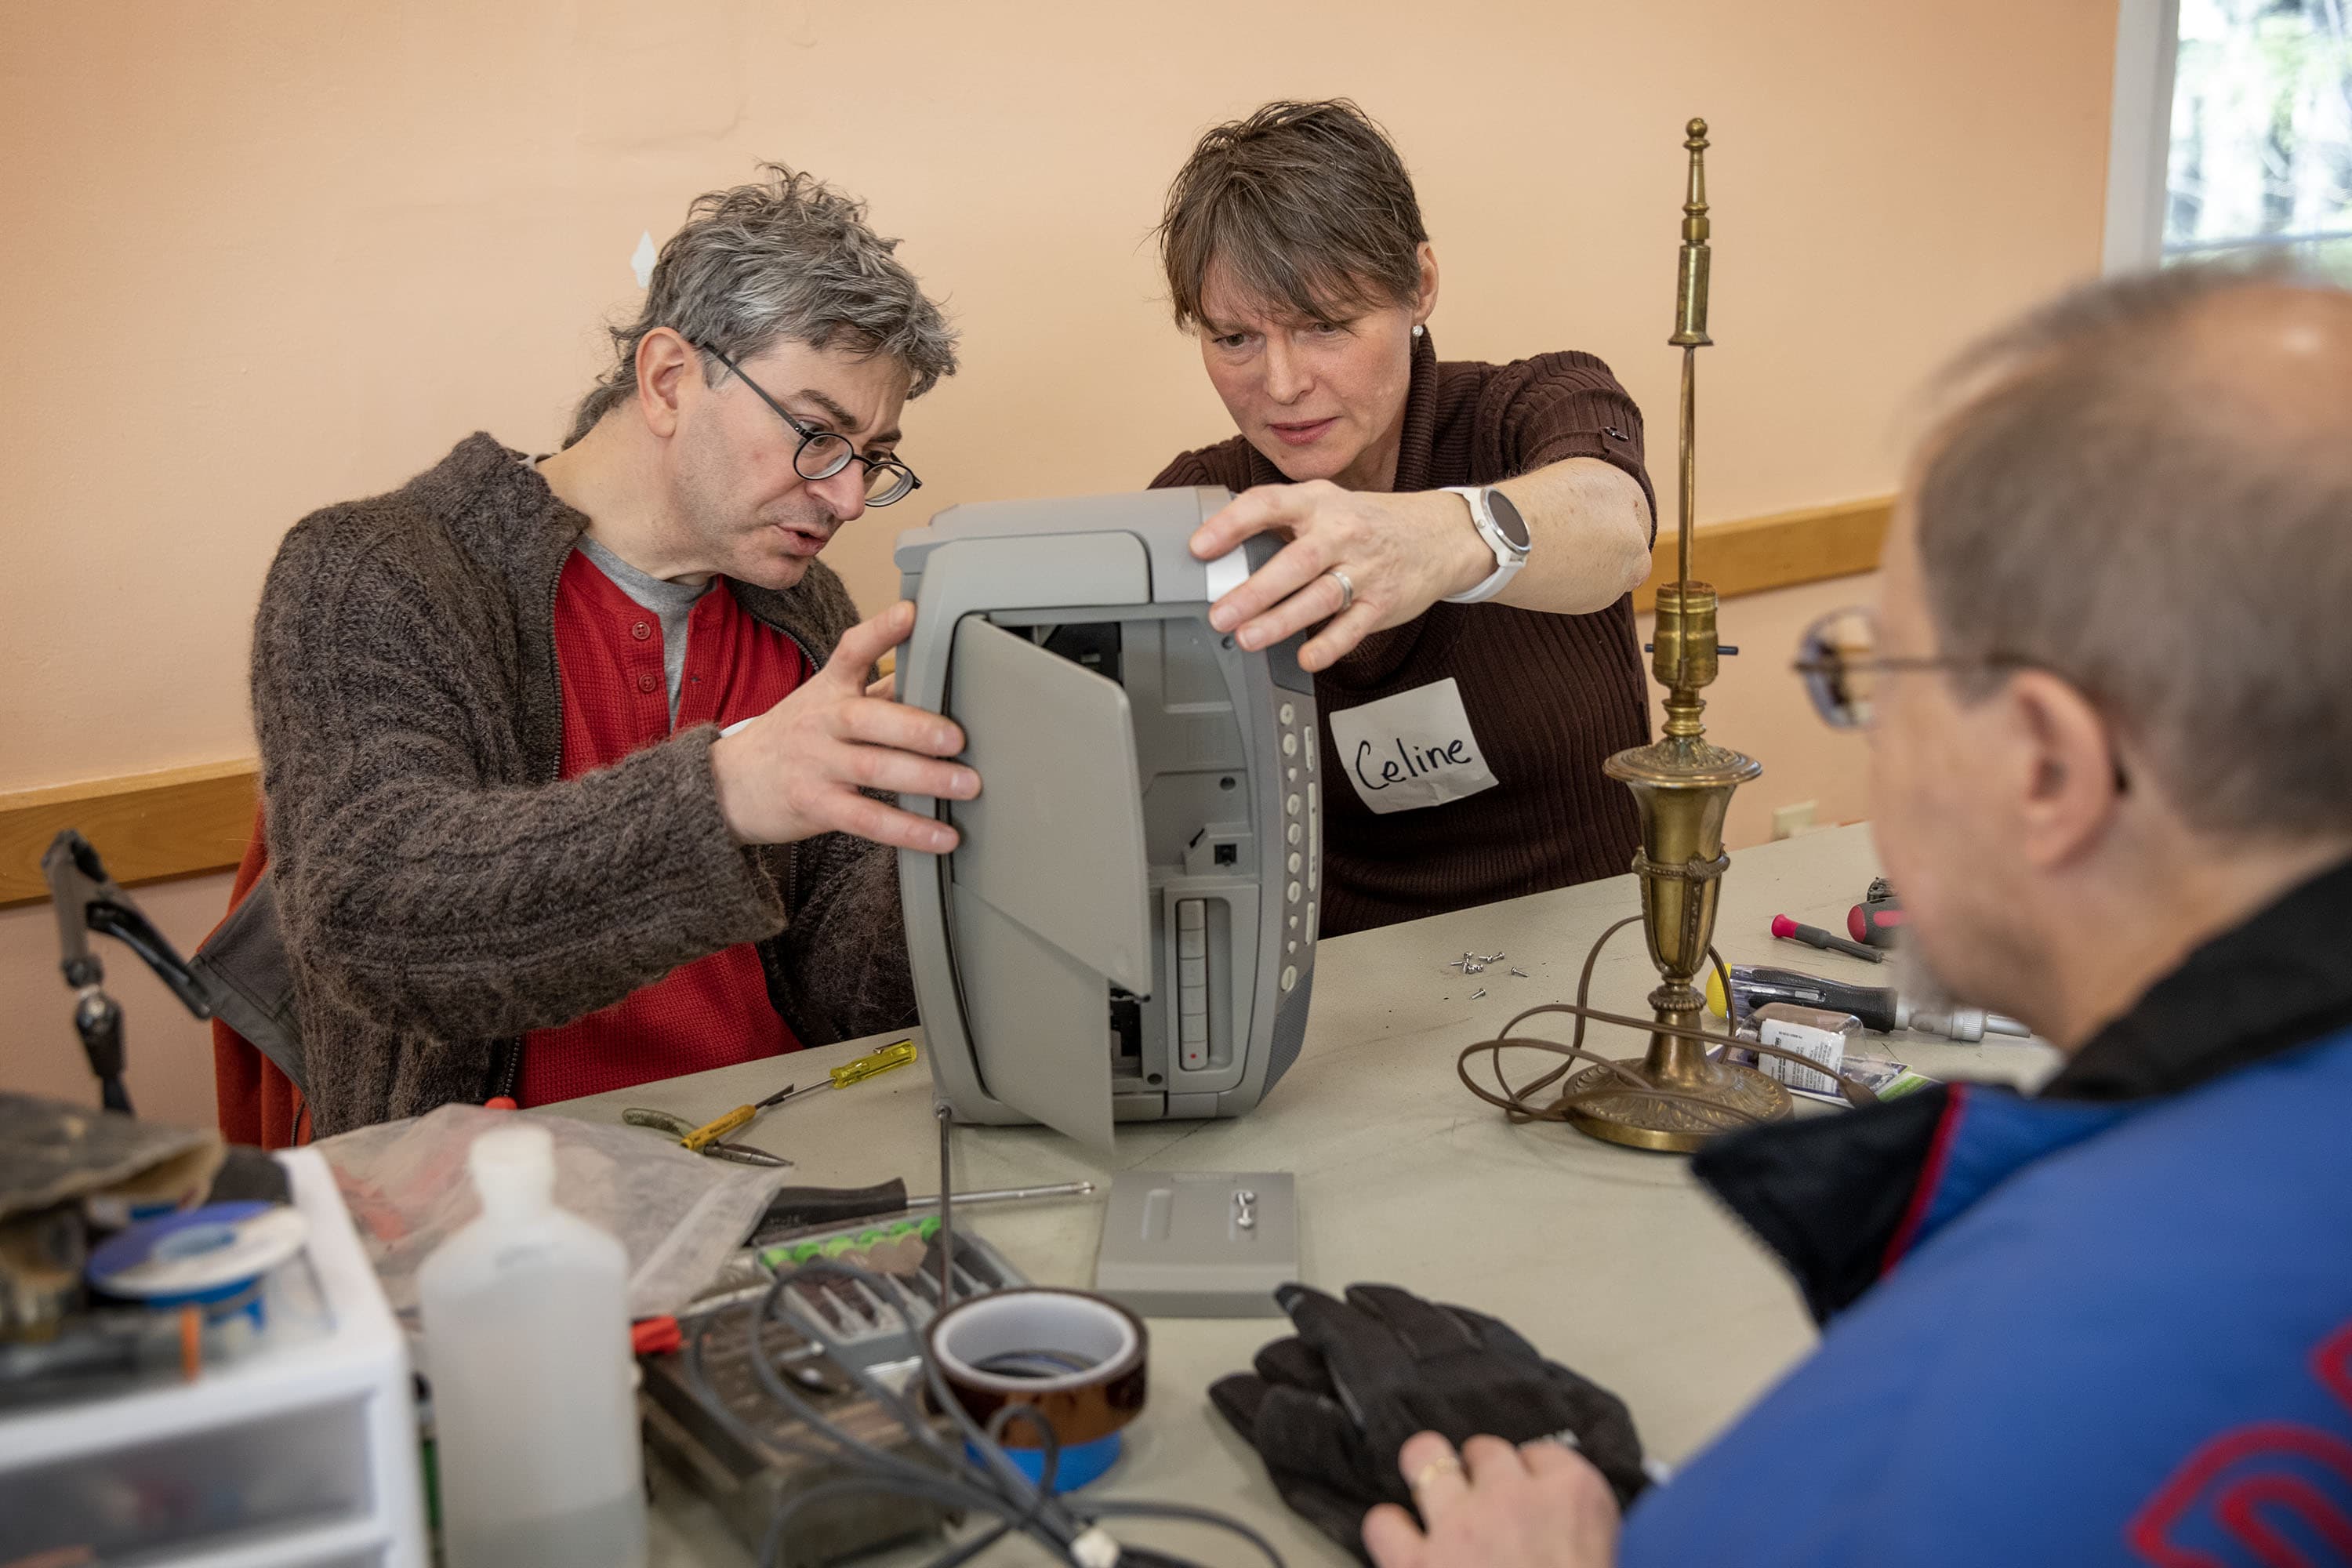 Celine Riard, right, and volunteer Ken Delpapa, left, examine Peter Stassa's CD/cassette player at Framingham's Repair Cafe. (Robin Lubbock/WBUR)